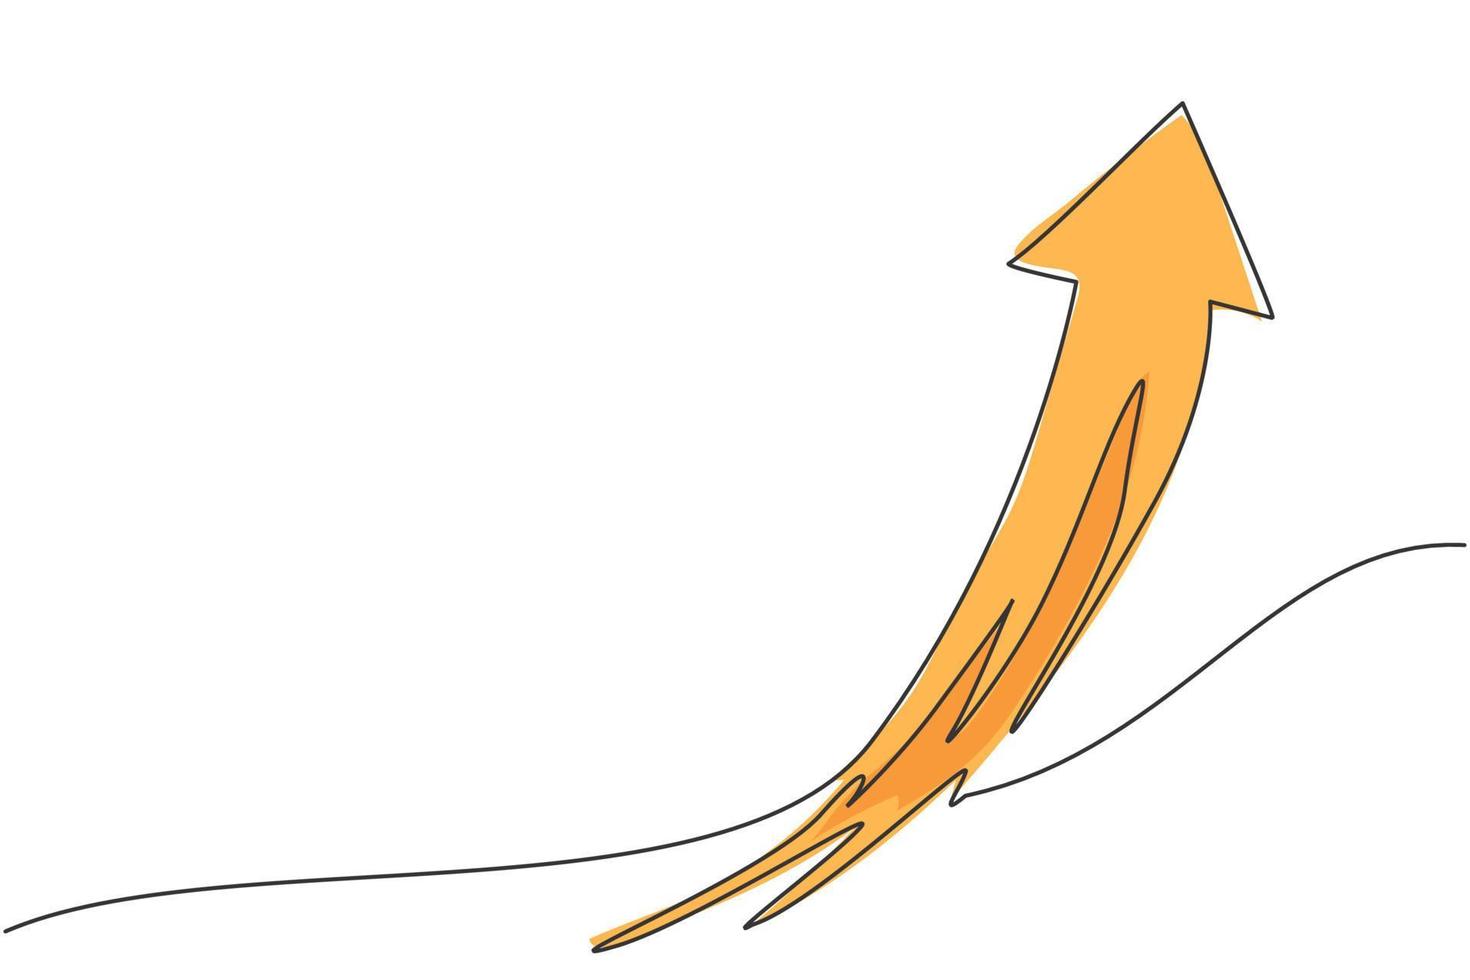 dibujo de una sola línea del símbolo de flecha volando hacia arriba en el cielo. concepto mínimo del gráfico de crecimiento de las finanzas empresariales. Ilustración de vector gráfico de diseño de dibujo de línea continua moderna